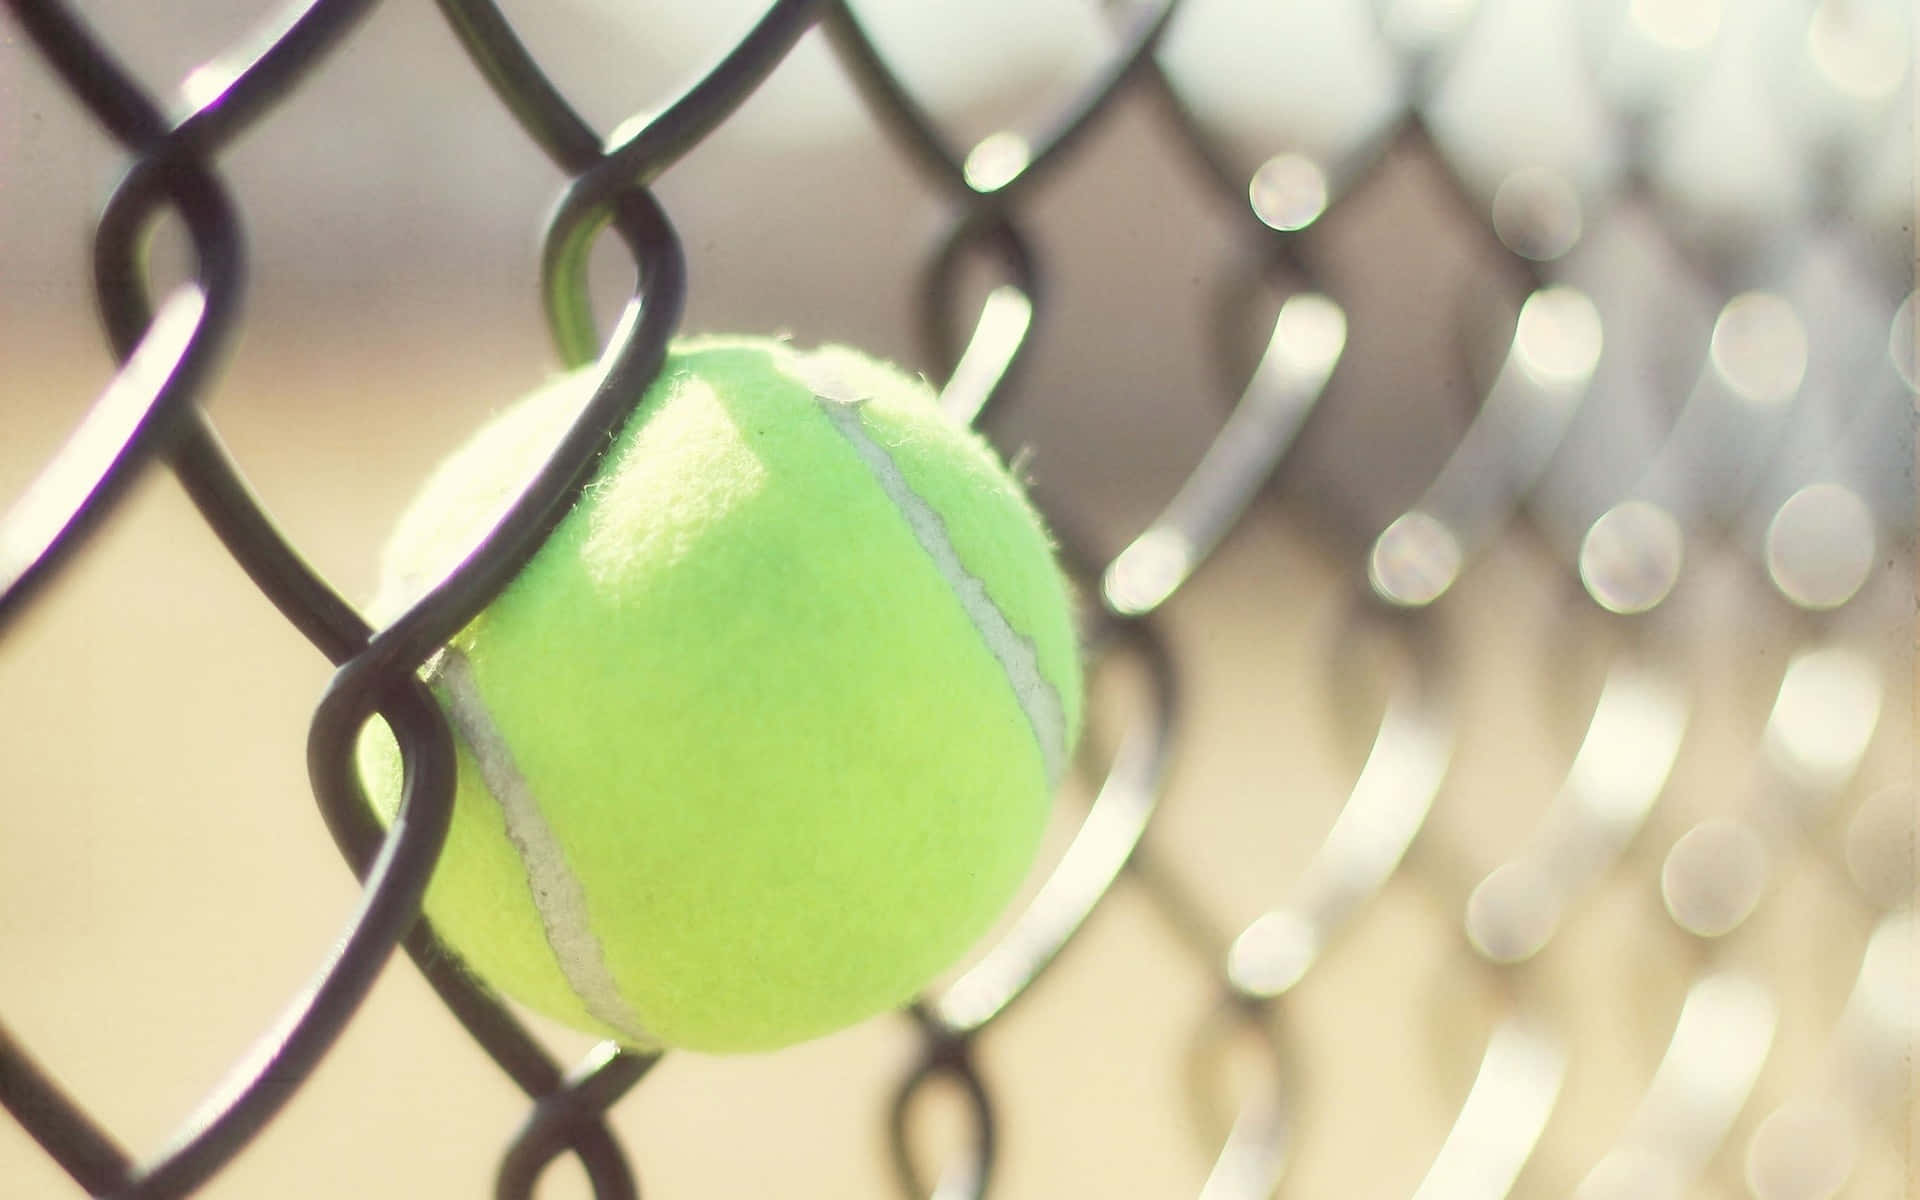 A fresh, bouncy tennis ball awaiting its next game. Wallpaper